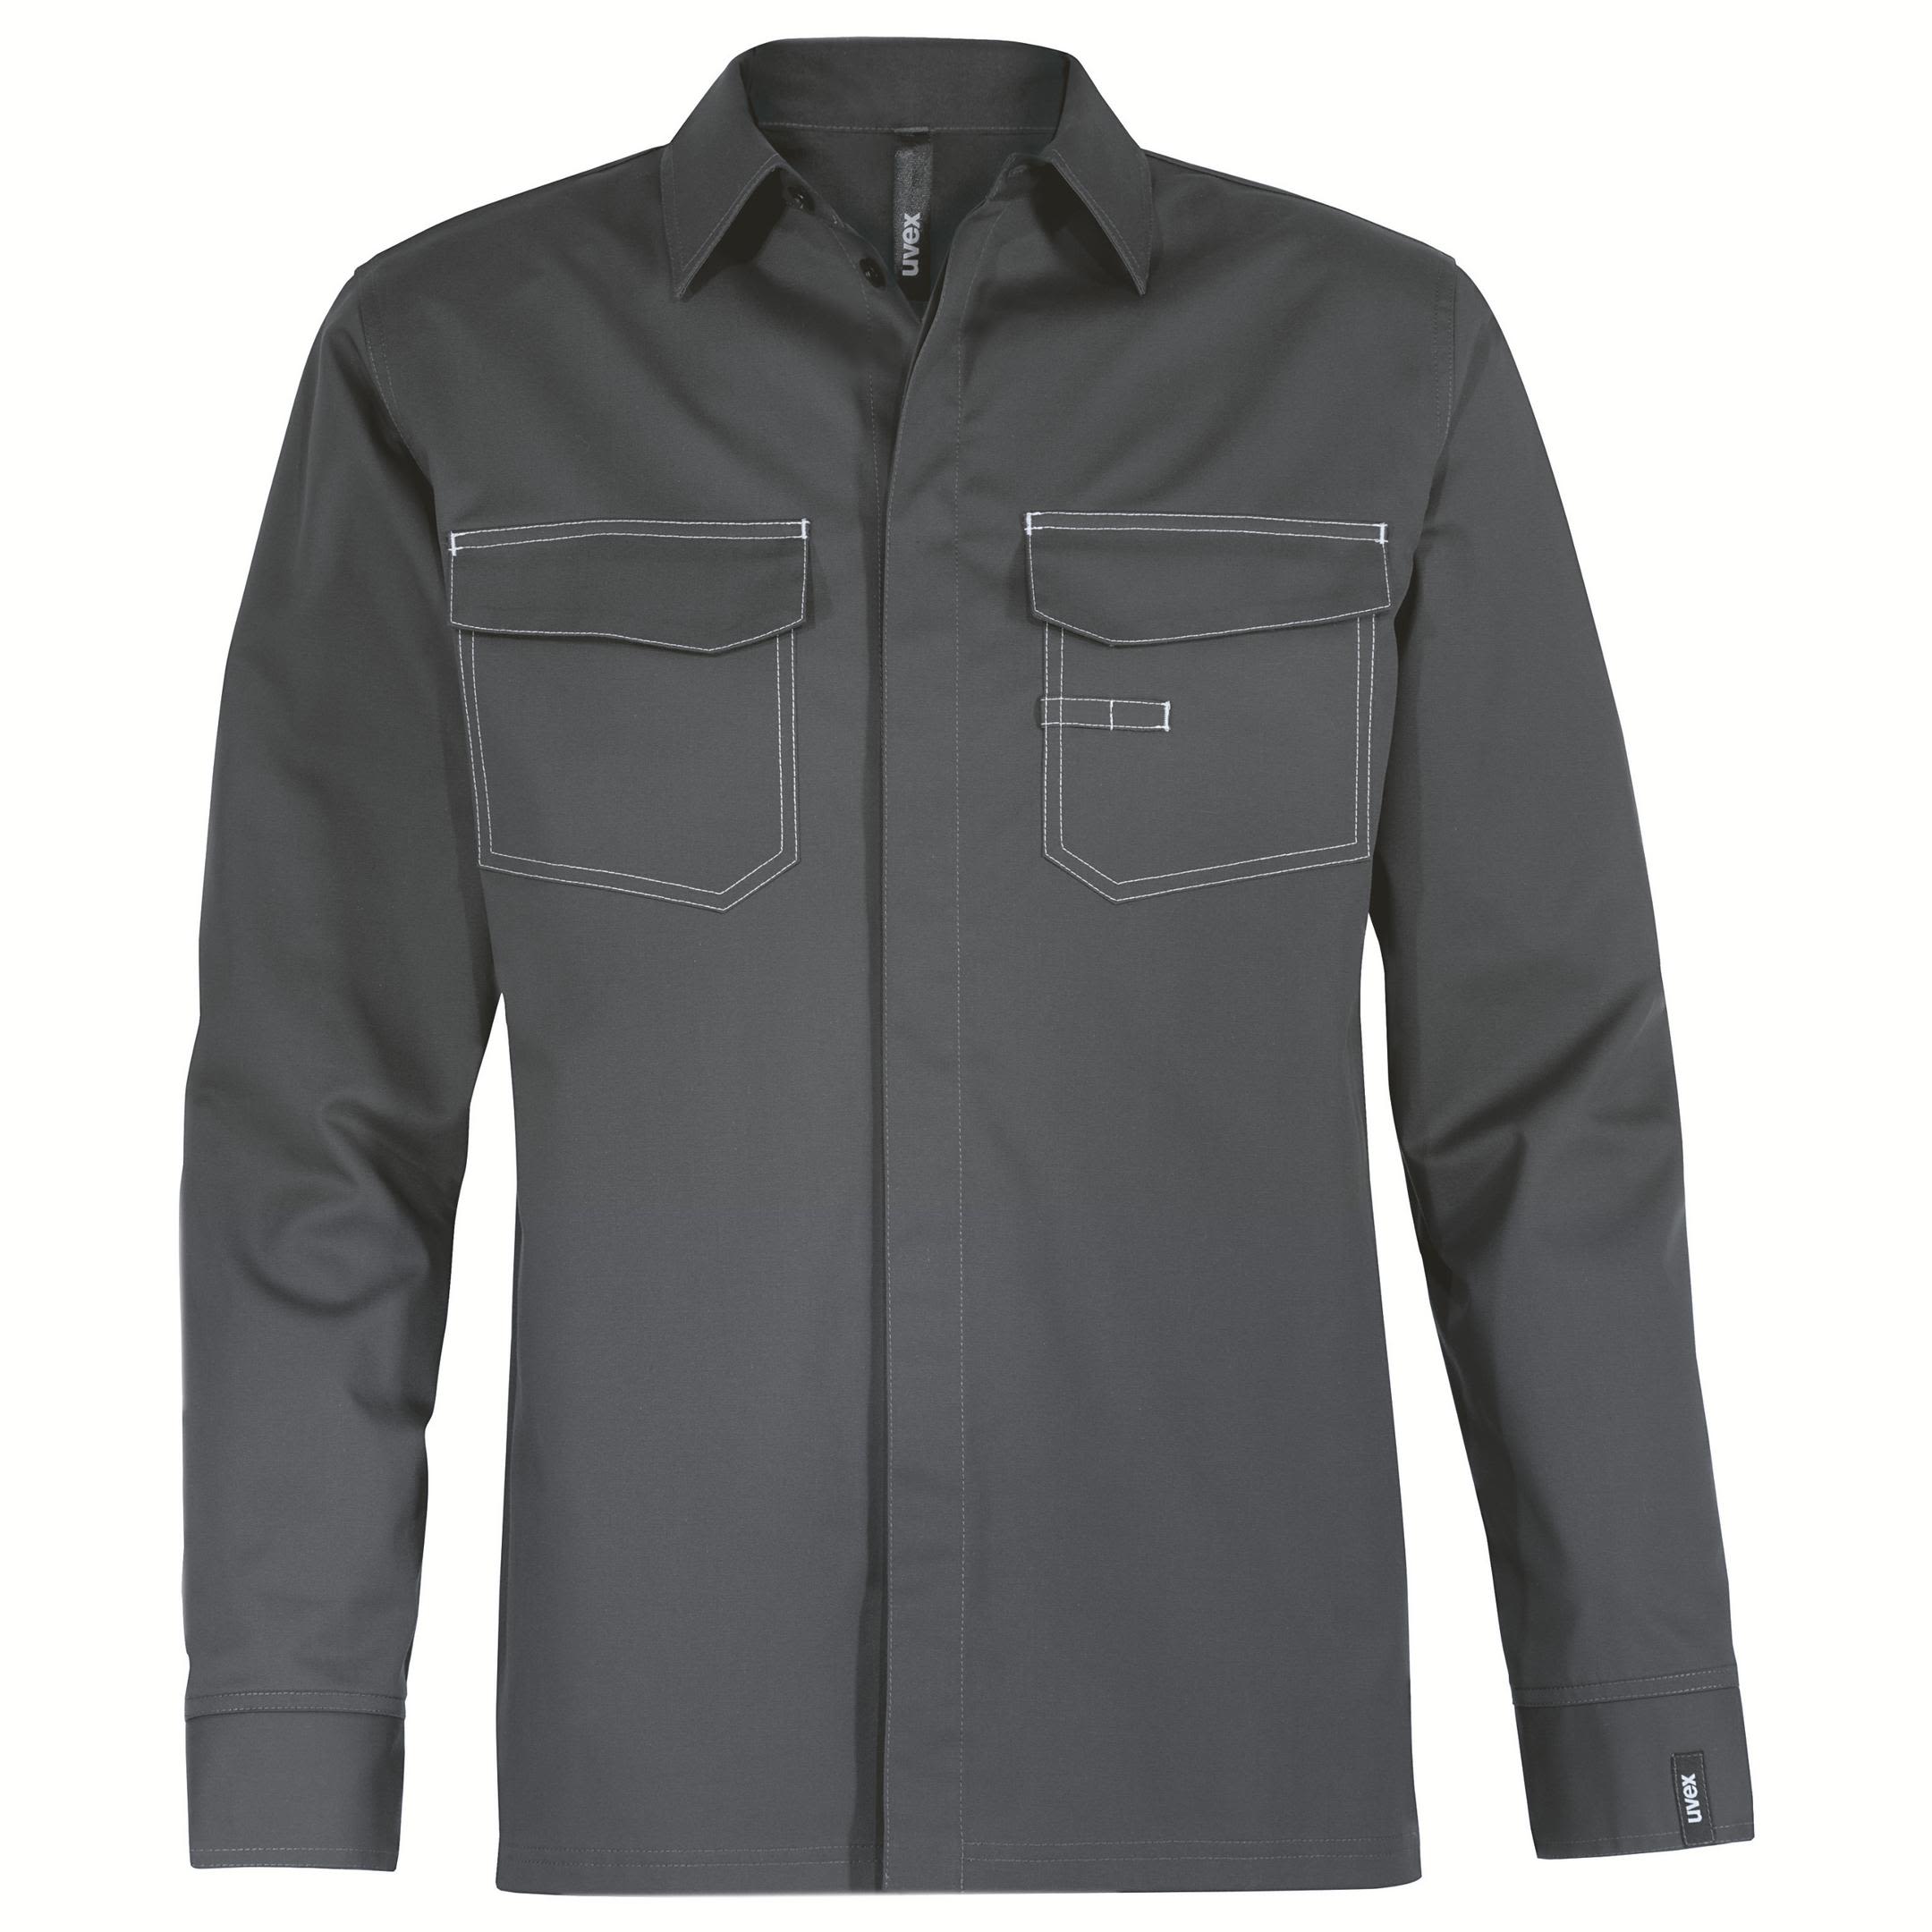 Camisa de trabajo Unisex Uvex de Algodón, elastano, poliéster de color Gris, talla 6XL